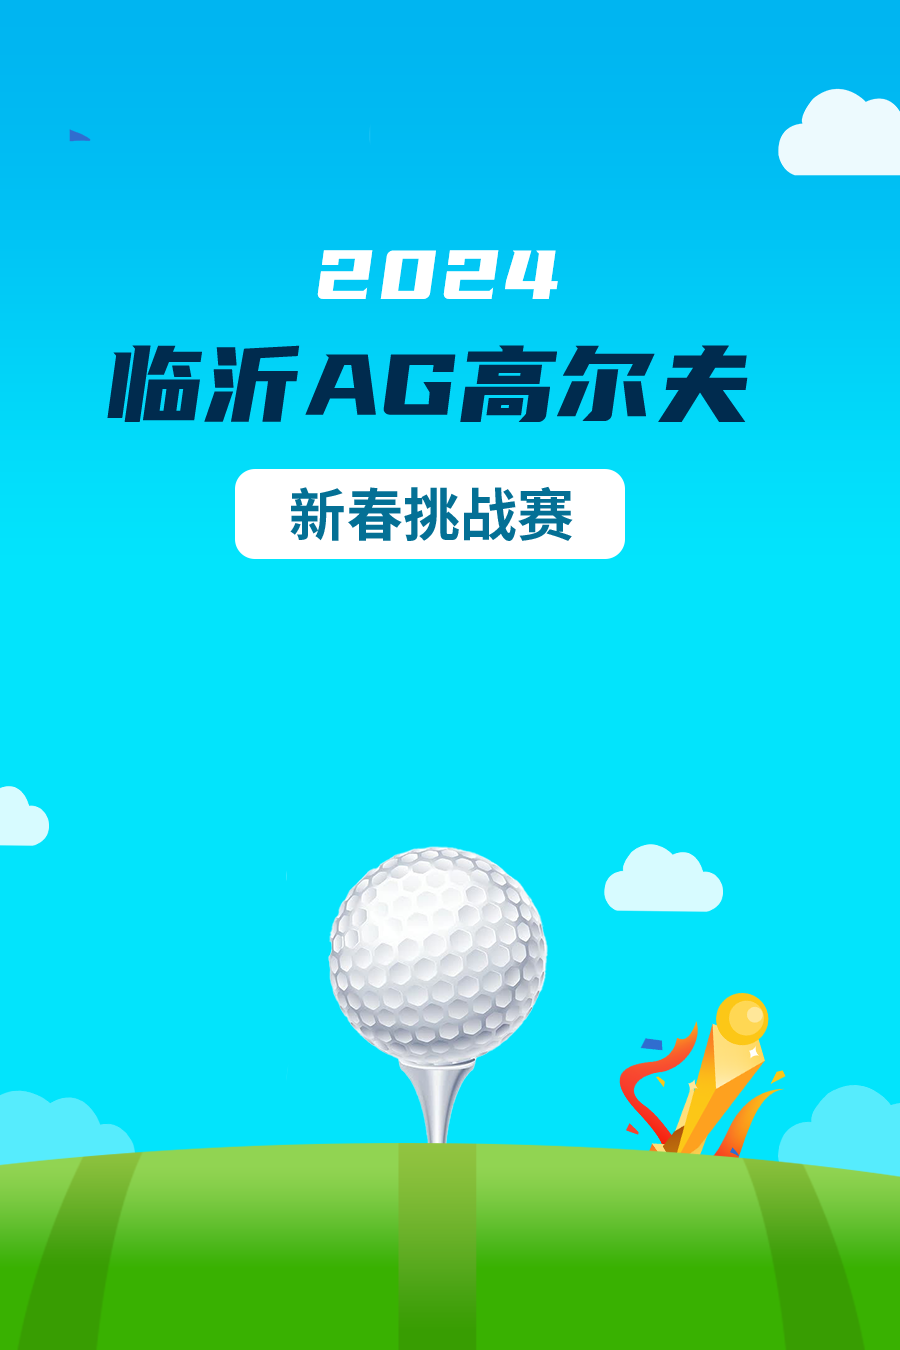 2024年 临沂AG高尔夫新春挑战赛